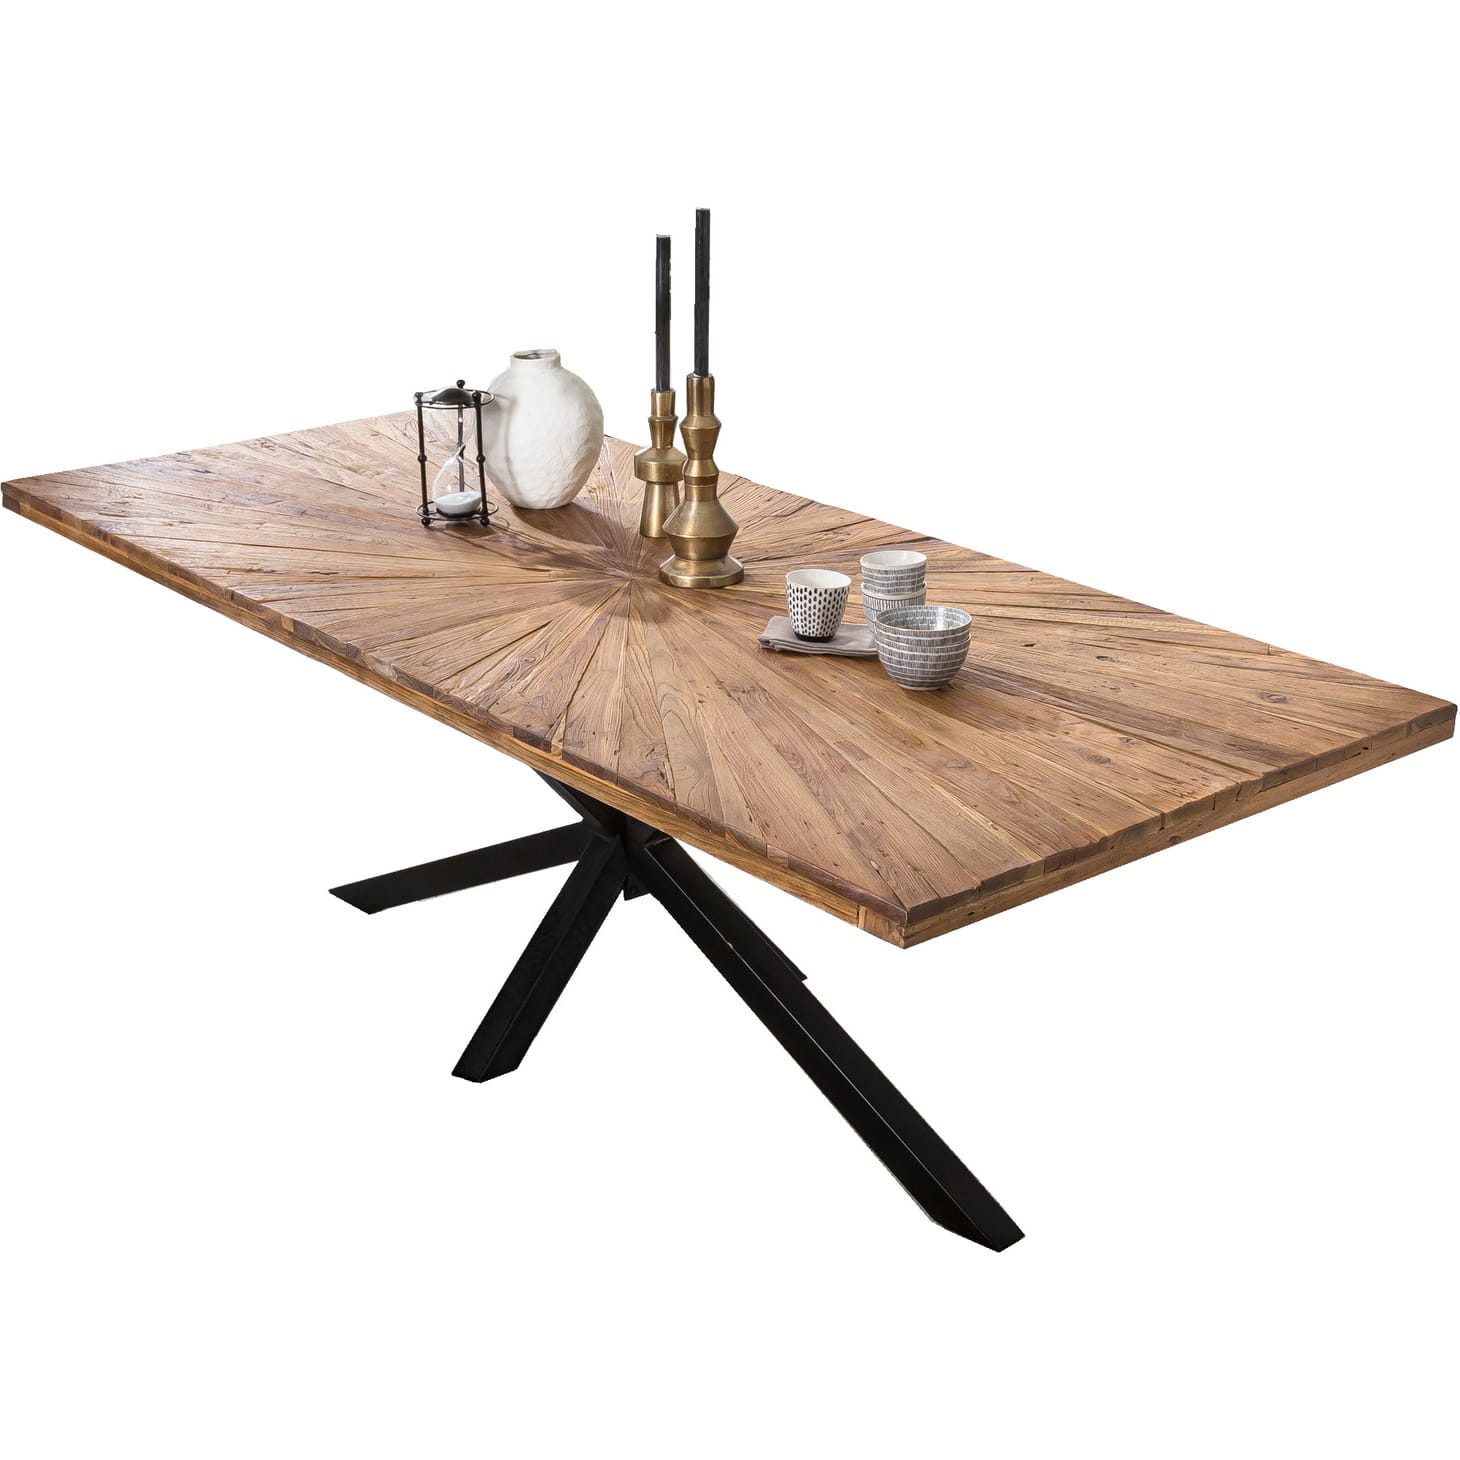 Massivholztisch 240x100 - recyceltes Unique Tischsystem Metall - | Möbel Tische | Teak Esstische | möbel antikschwarz | Tischsystem mutoni mit modular natur | Gestellen Tischplatten | 